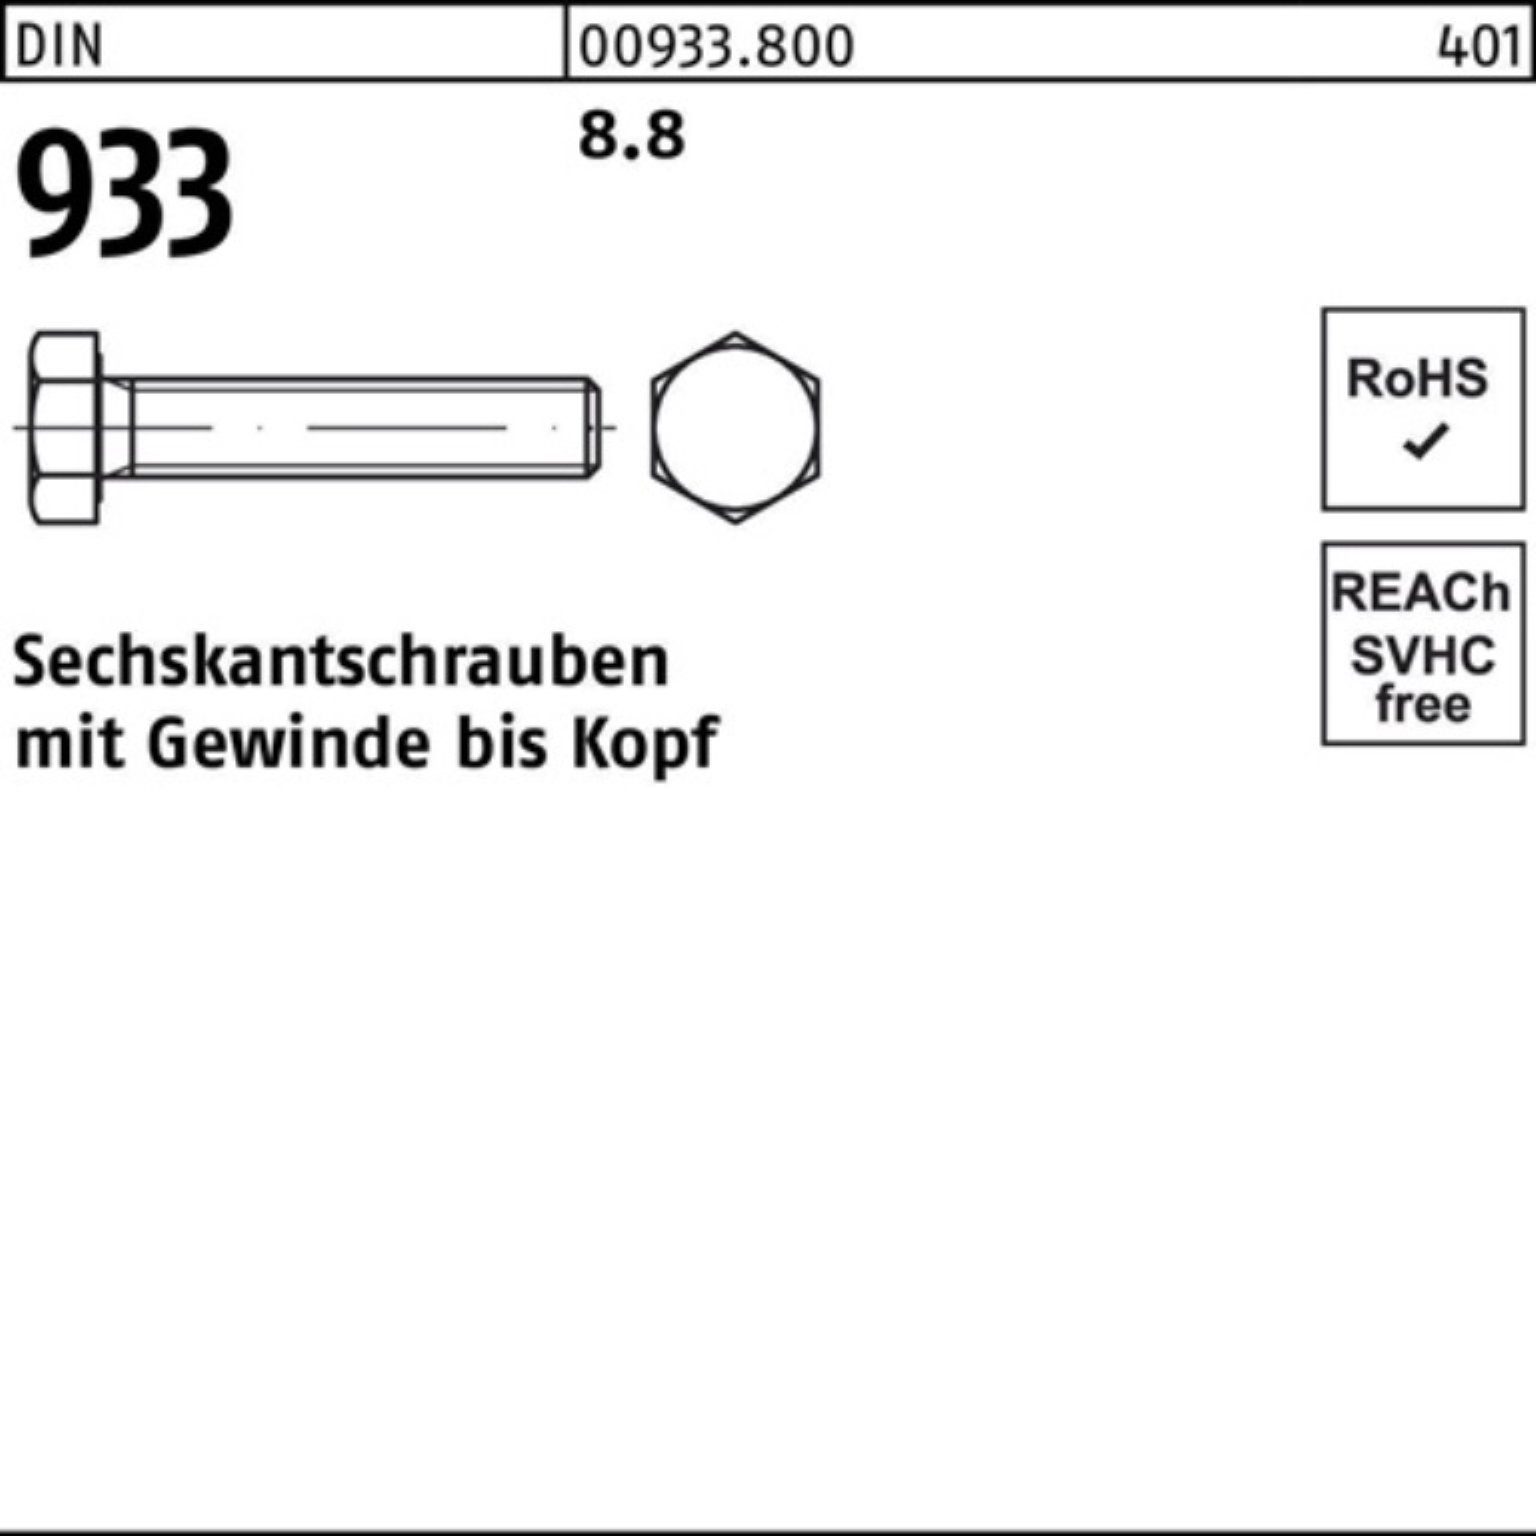 Stück 500 Sechskantschraube Reyher 933 DIN VG 8.8 Pack 16 933 M4x Sechskantschraube DIN 500er